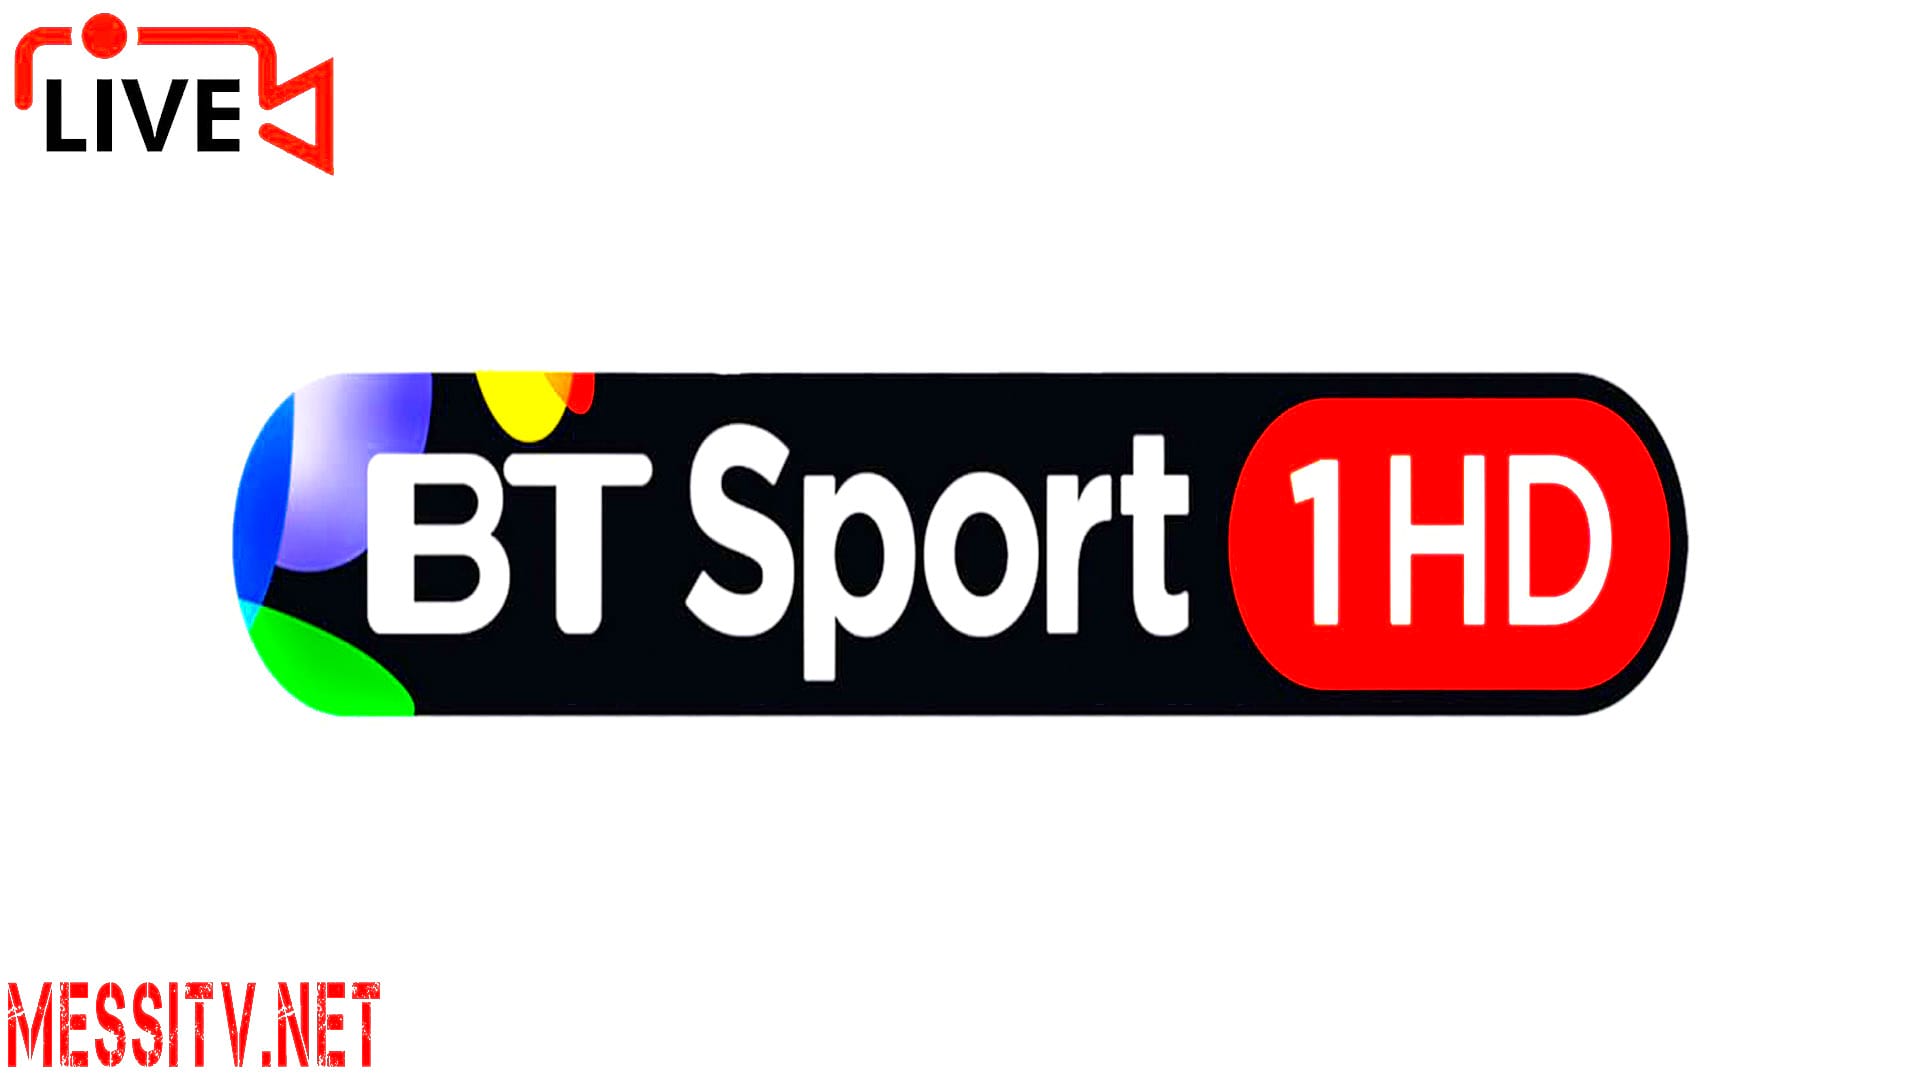 Bt Sport 1 Hd, Bt Sport 2 Hd, Bt Sport 3 Hd, Bt Sport Espn Hd, Watch Tv Live Online, Watch Uk Tv Live Online